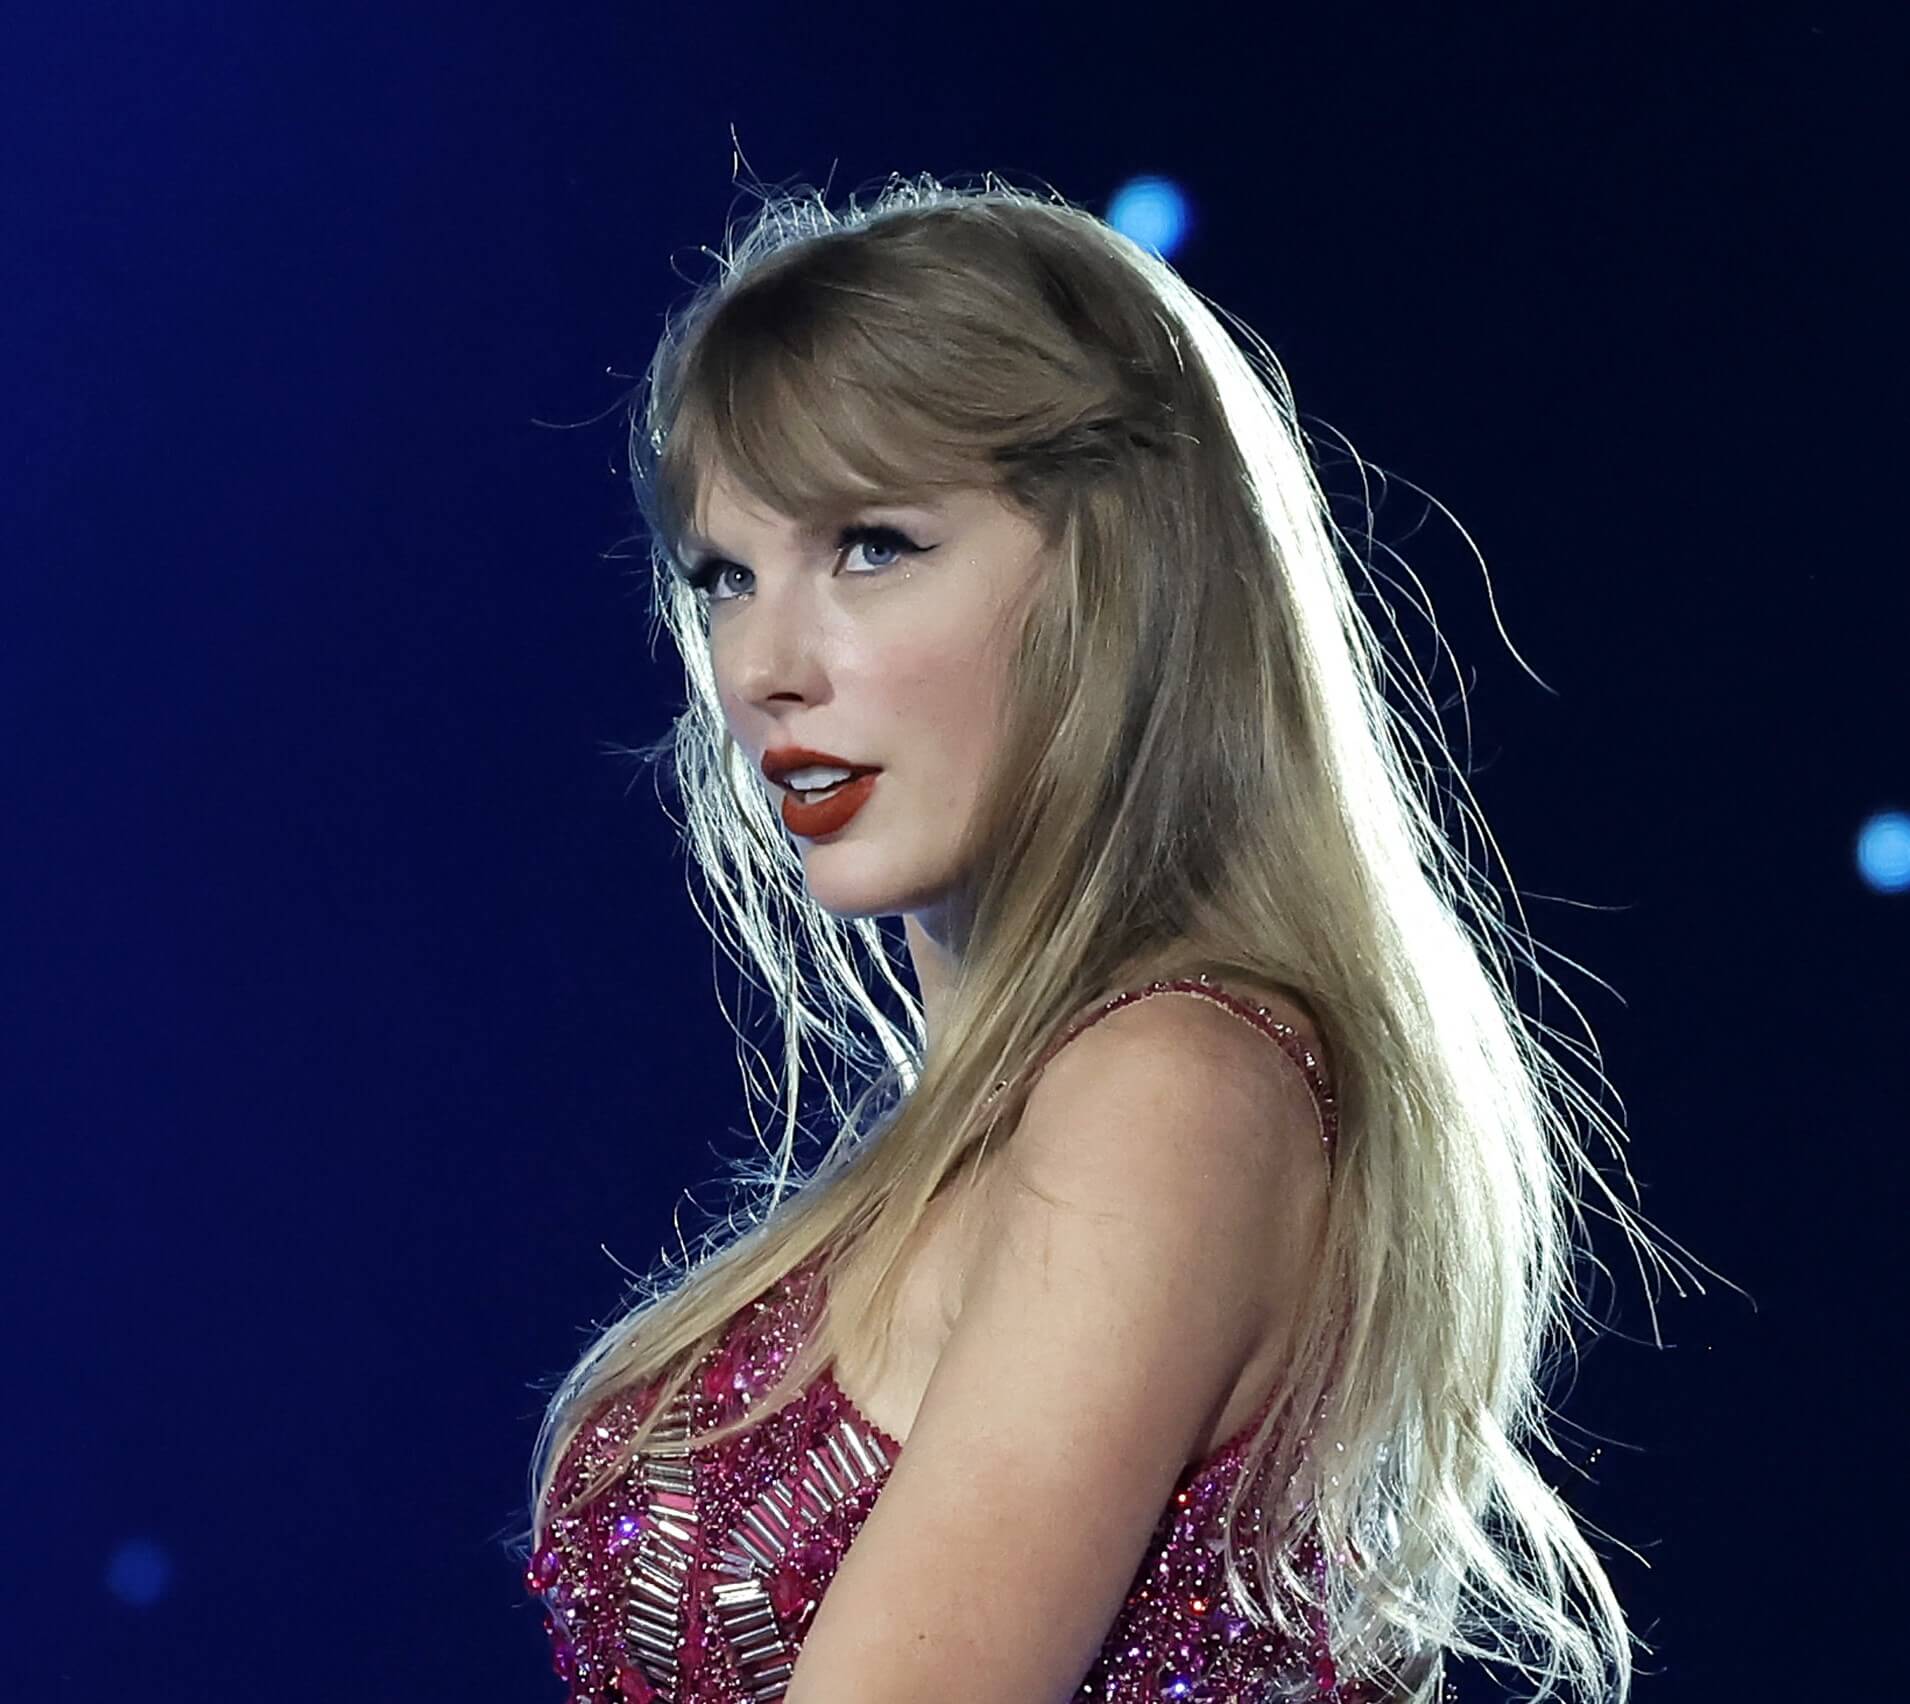 Taylor Swift wearing purple